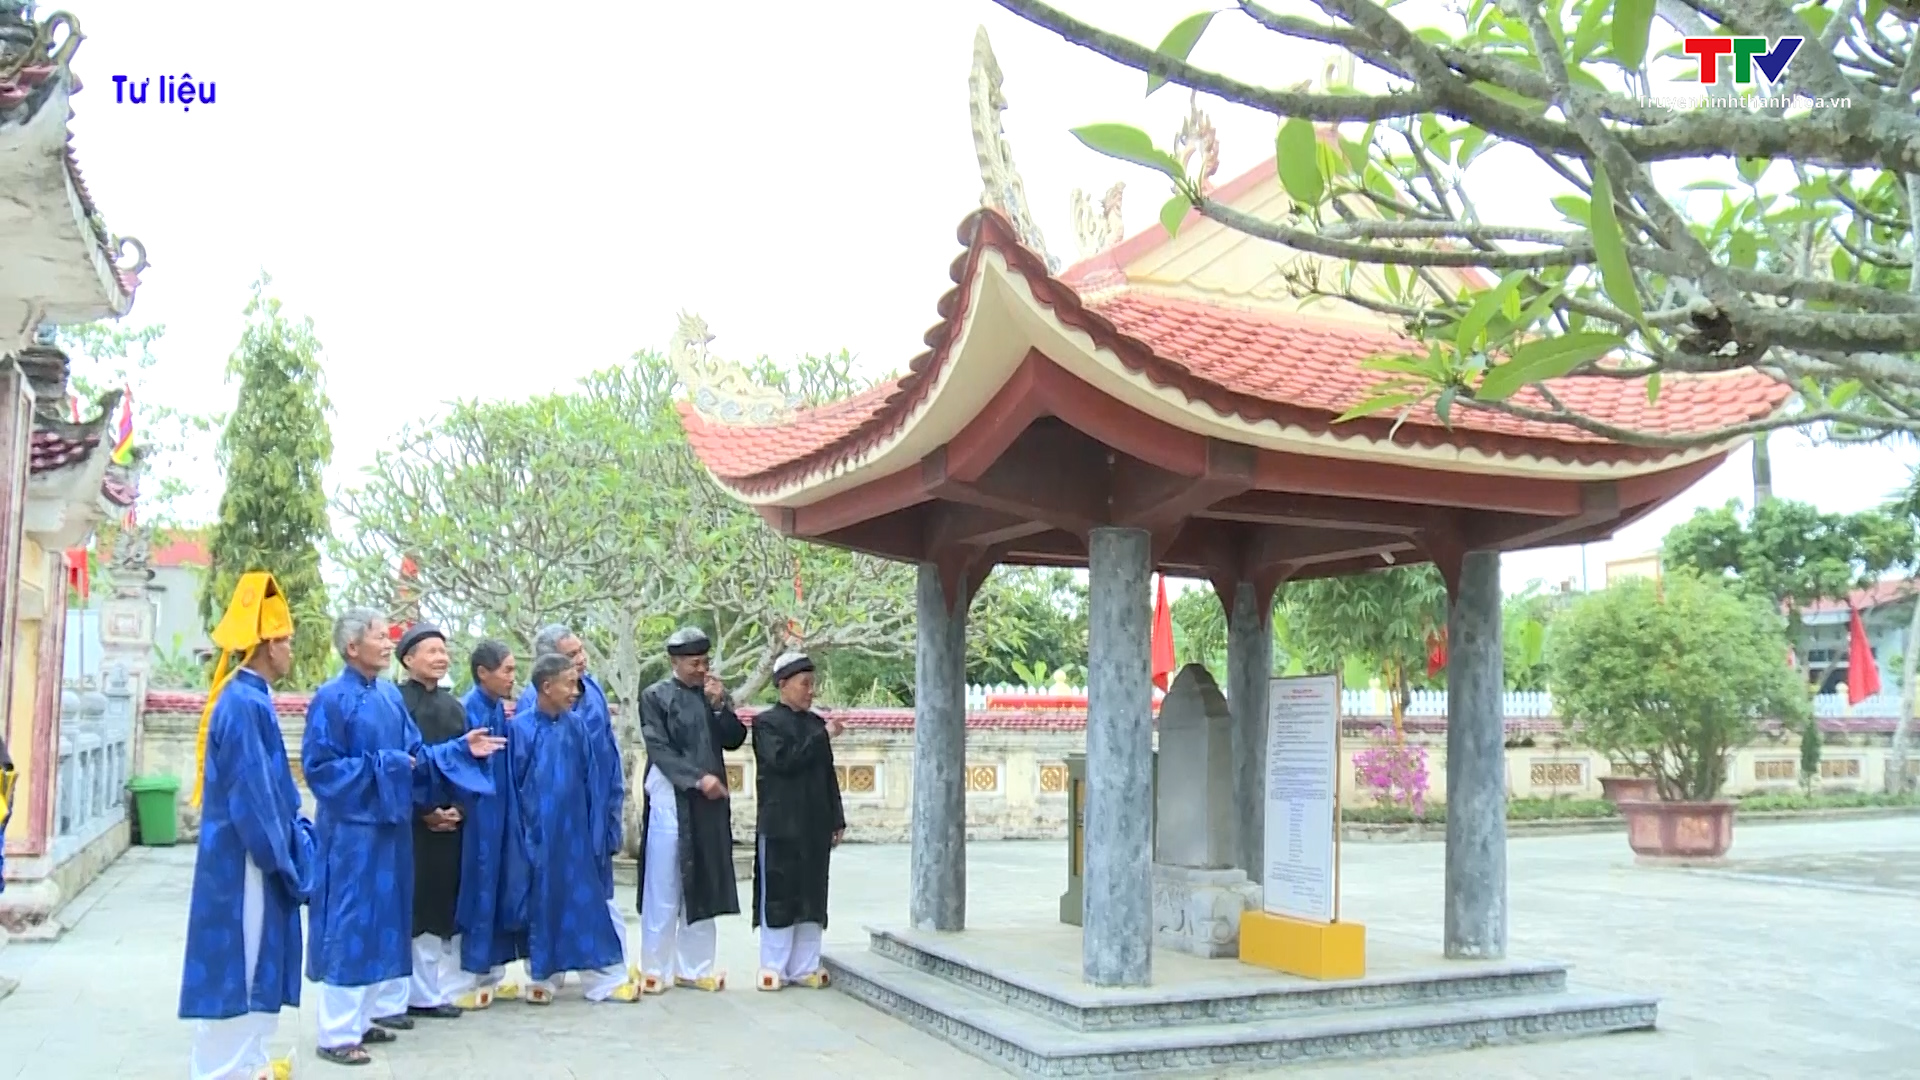 Huyện Thiệu Hóa chuẩn bị tổ chức các hoạt động nhân 701 năm ngày mất nhà sử học Lê Văn Hưu - Ảnh 2.